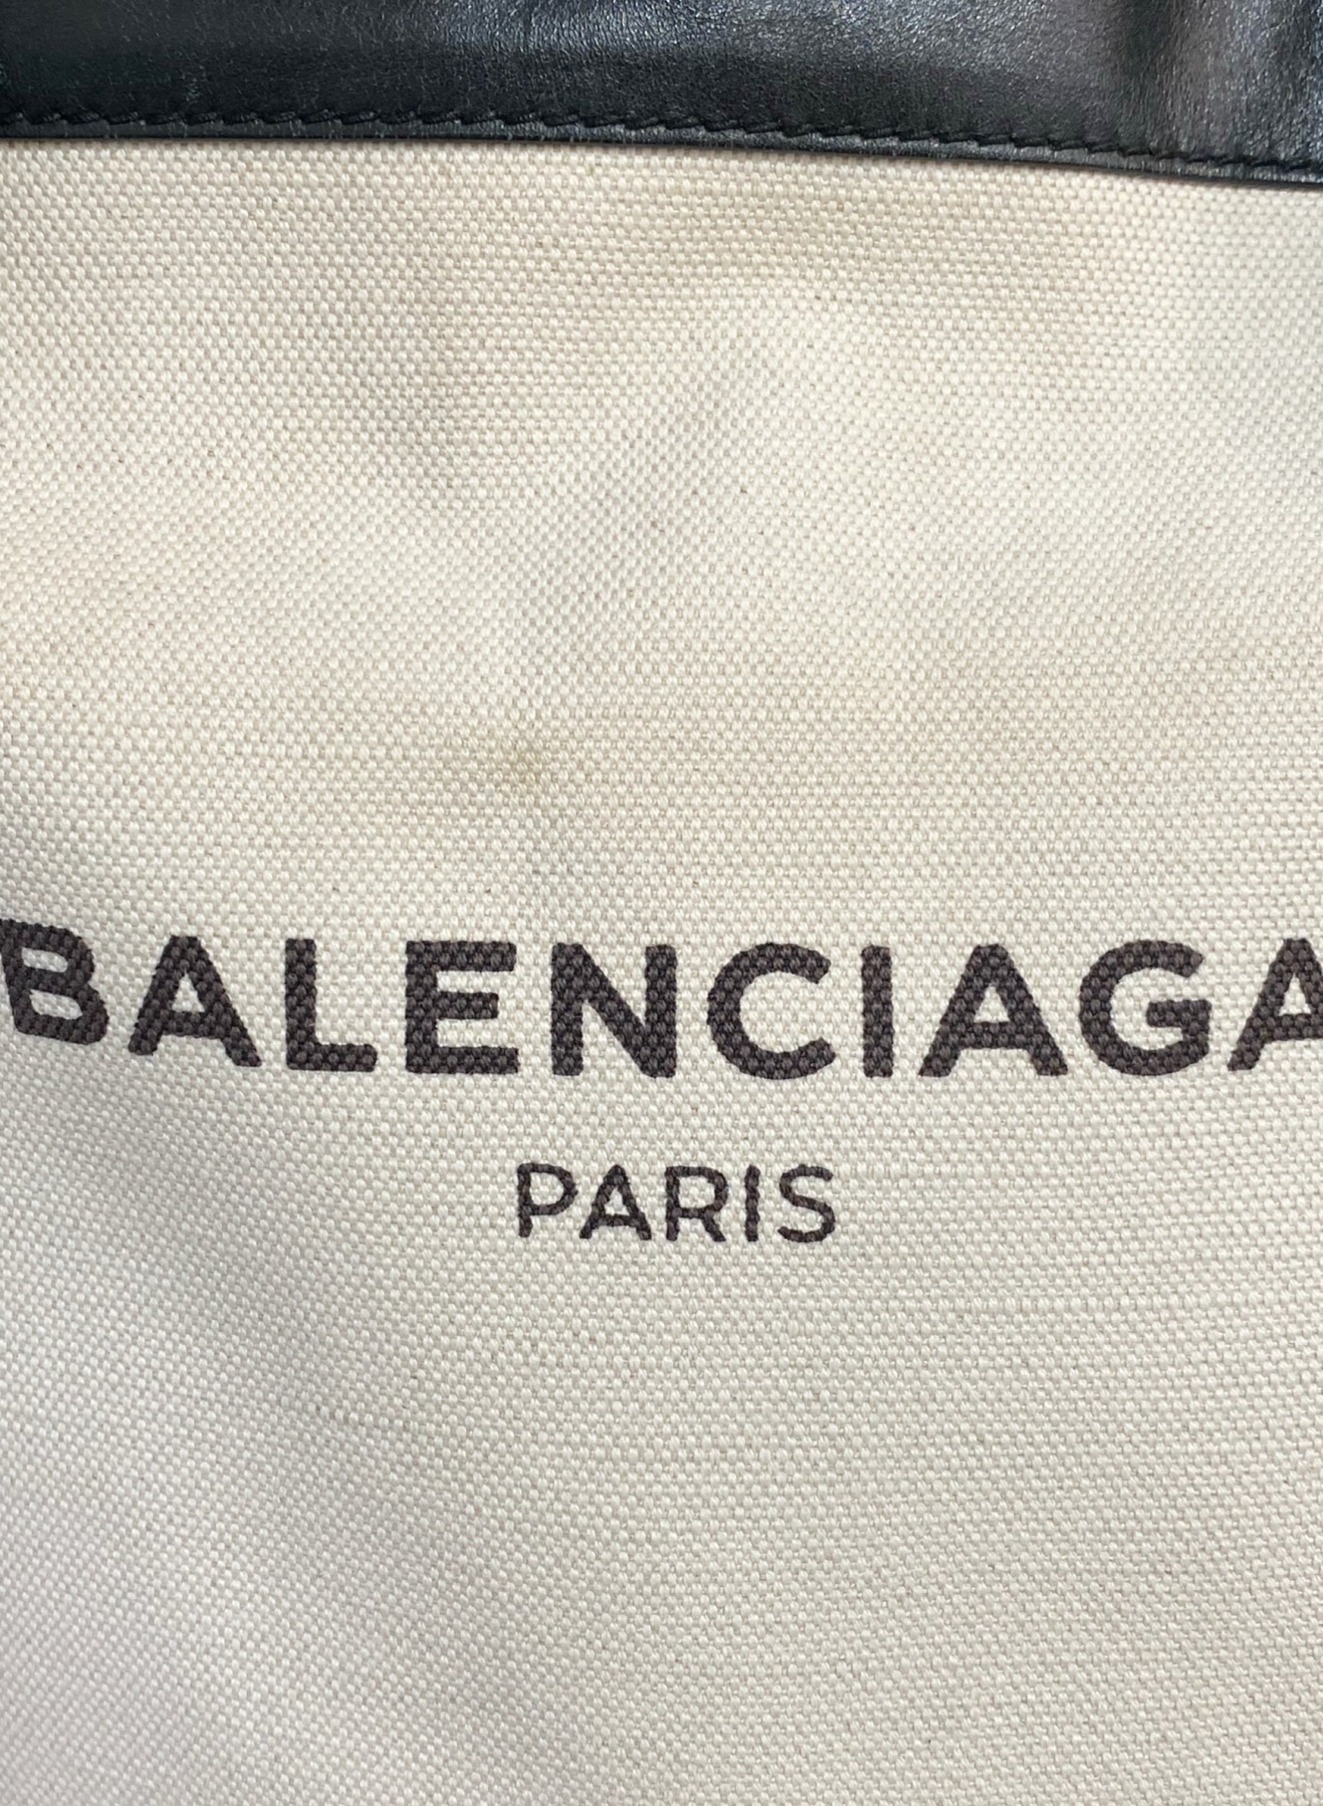 セール特価 バレンシアガ ネームロゴトートバッグ ショップ袋